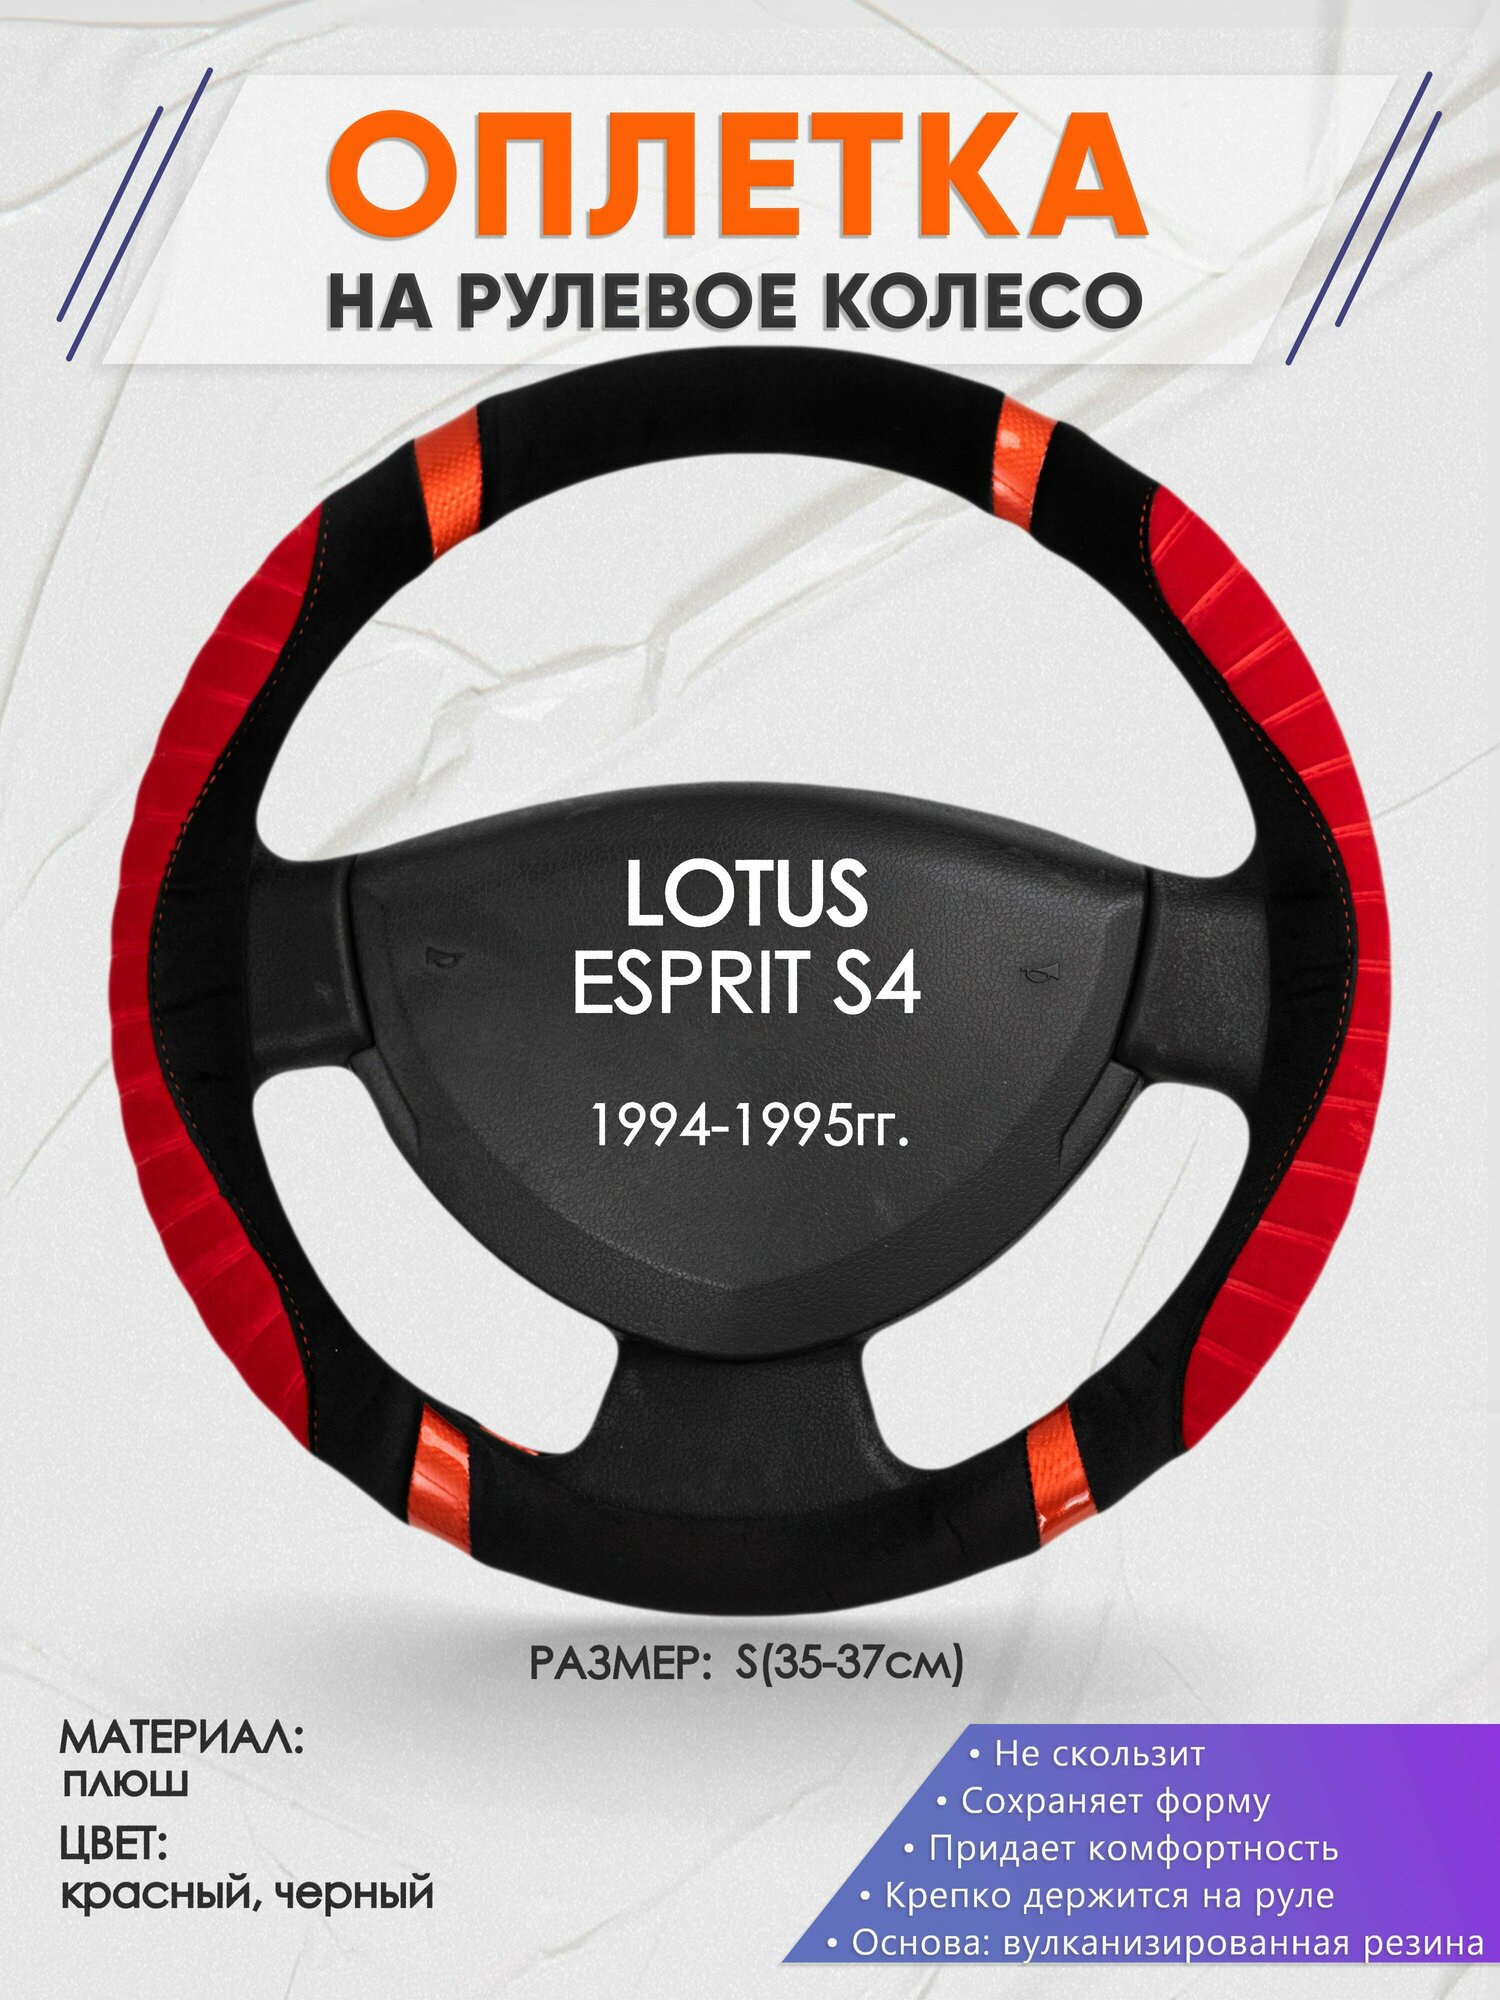 Оплетка на руль для LOTUS ESPRIT S4(Лотус Еспирит) 1994-1995, S(35-37см), Замша 34